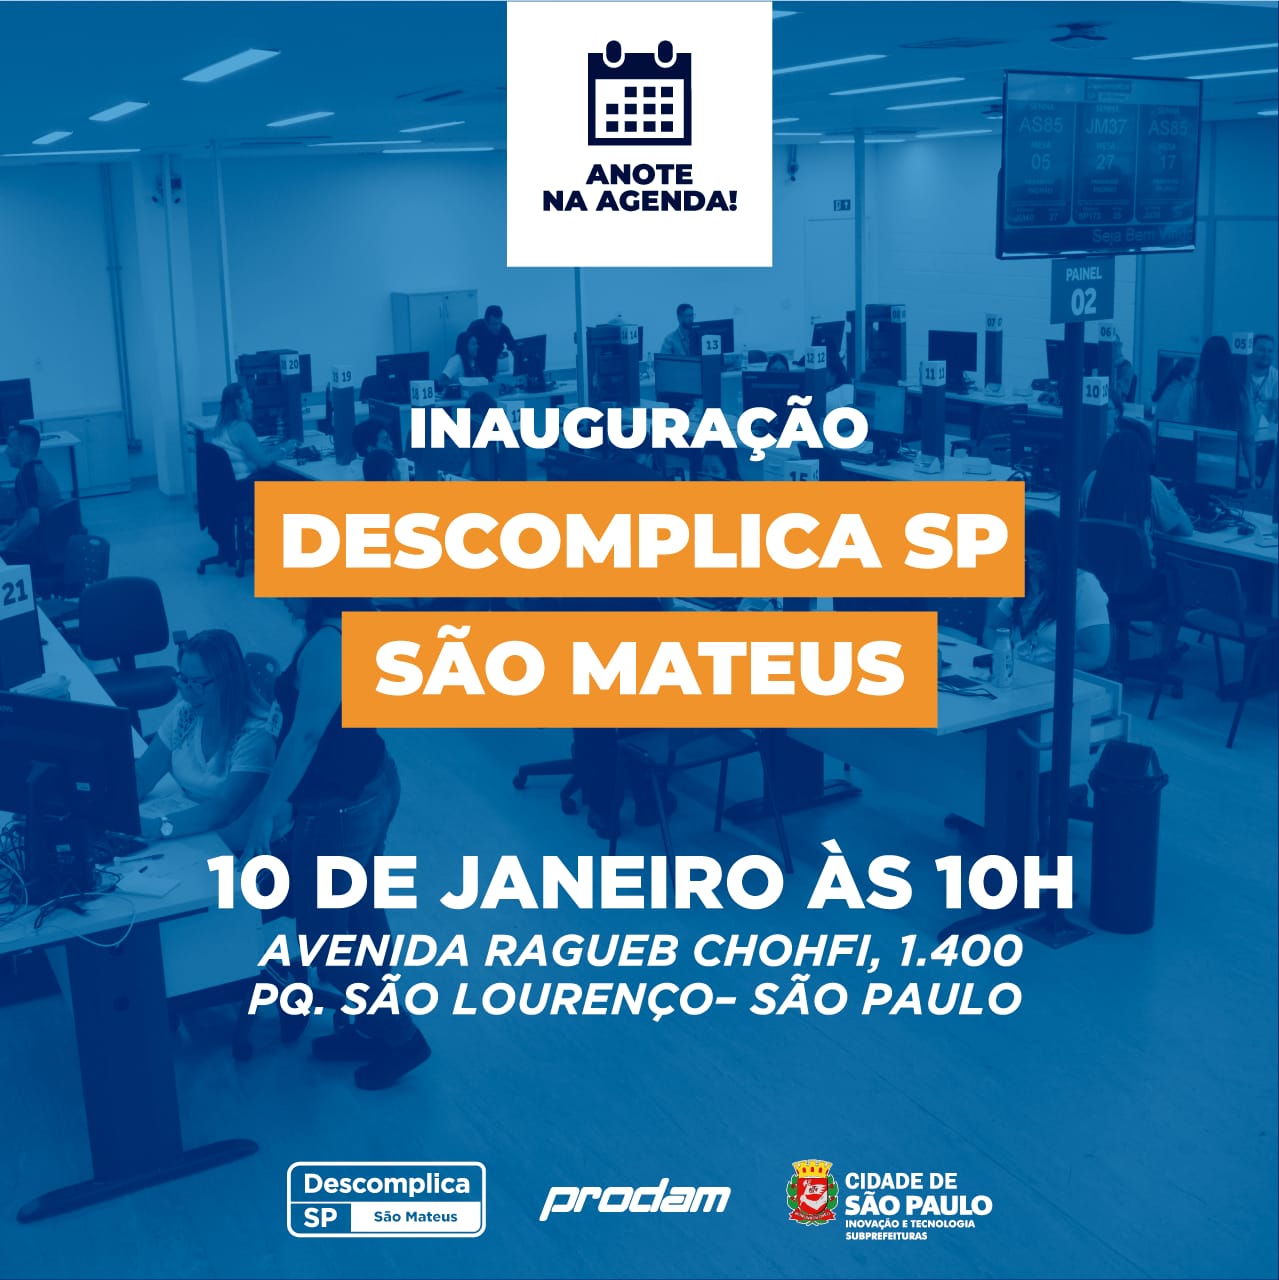 convite informa que o Descomplica São Mateus será inaugurado sexta, dia 10, às 10 horas, na avenida Ragueb Chohfi, 1.400. 